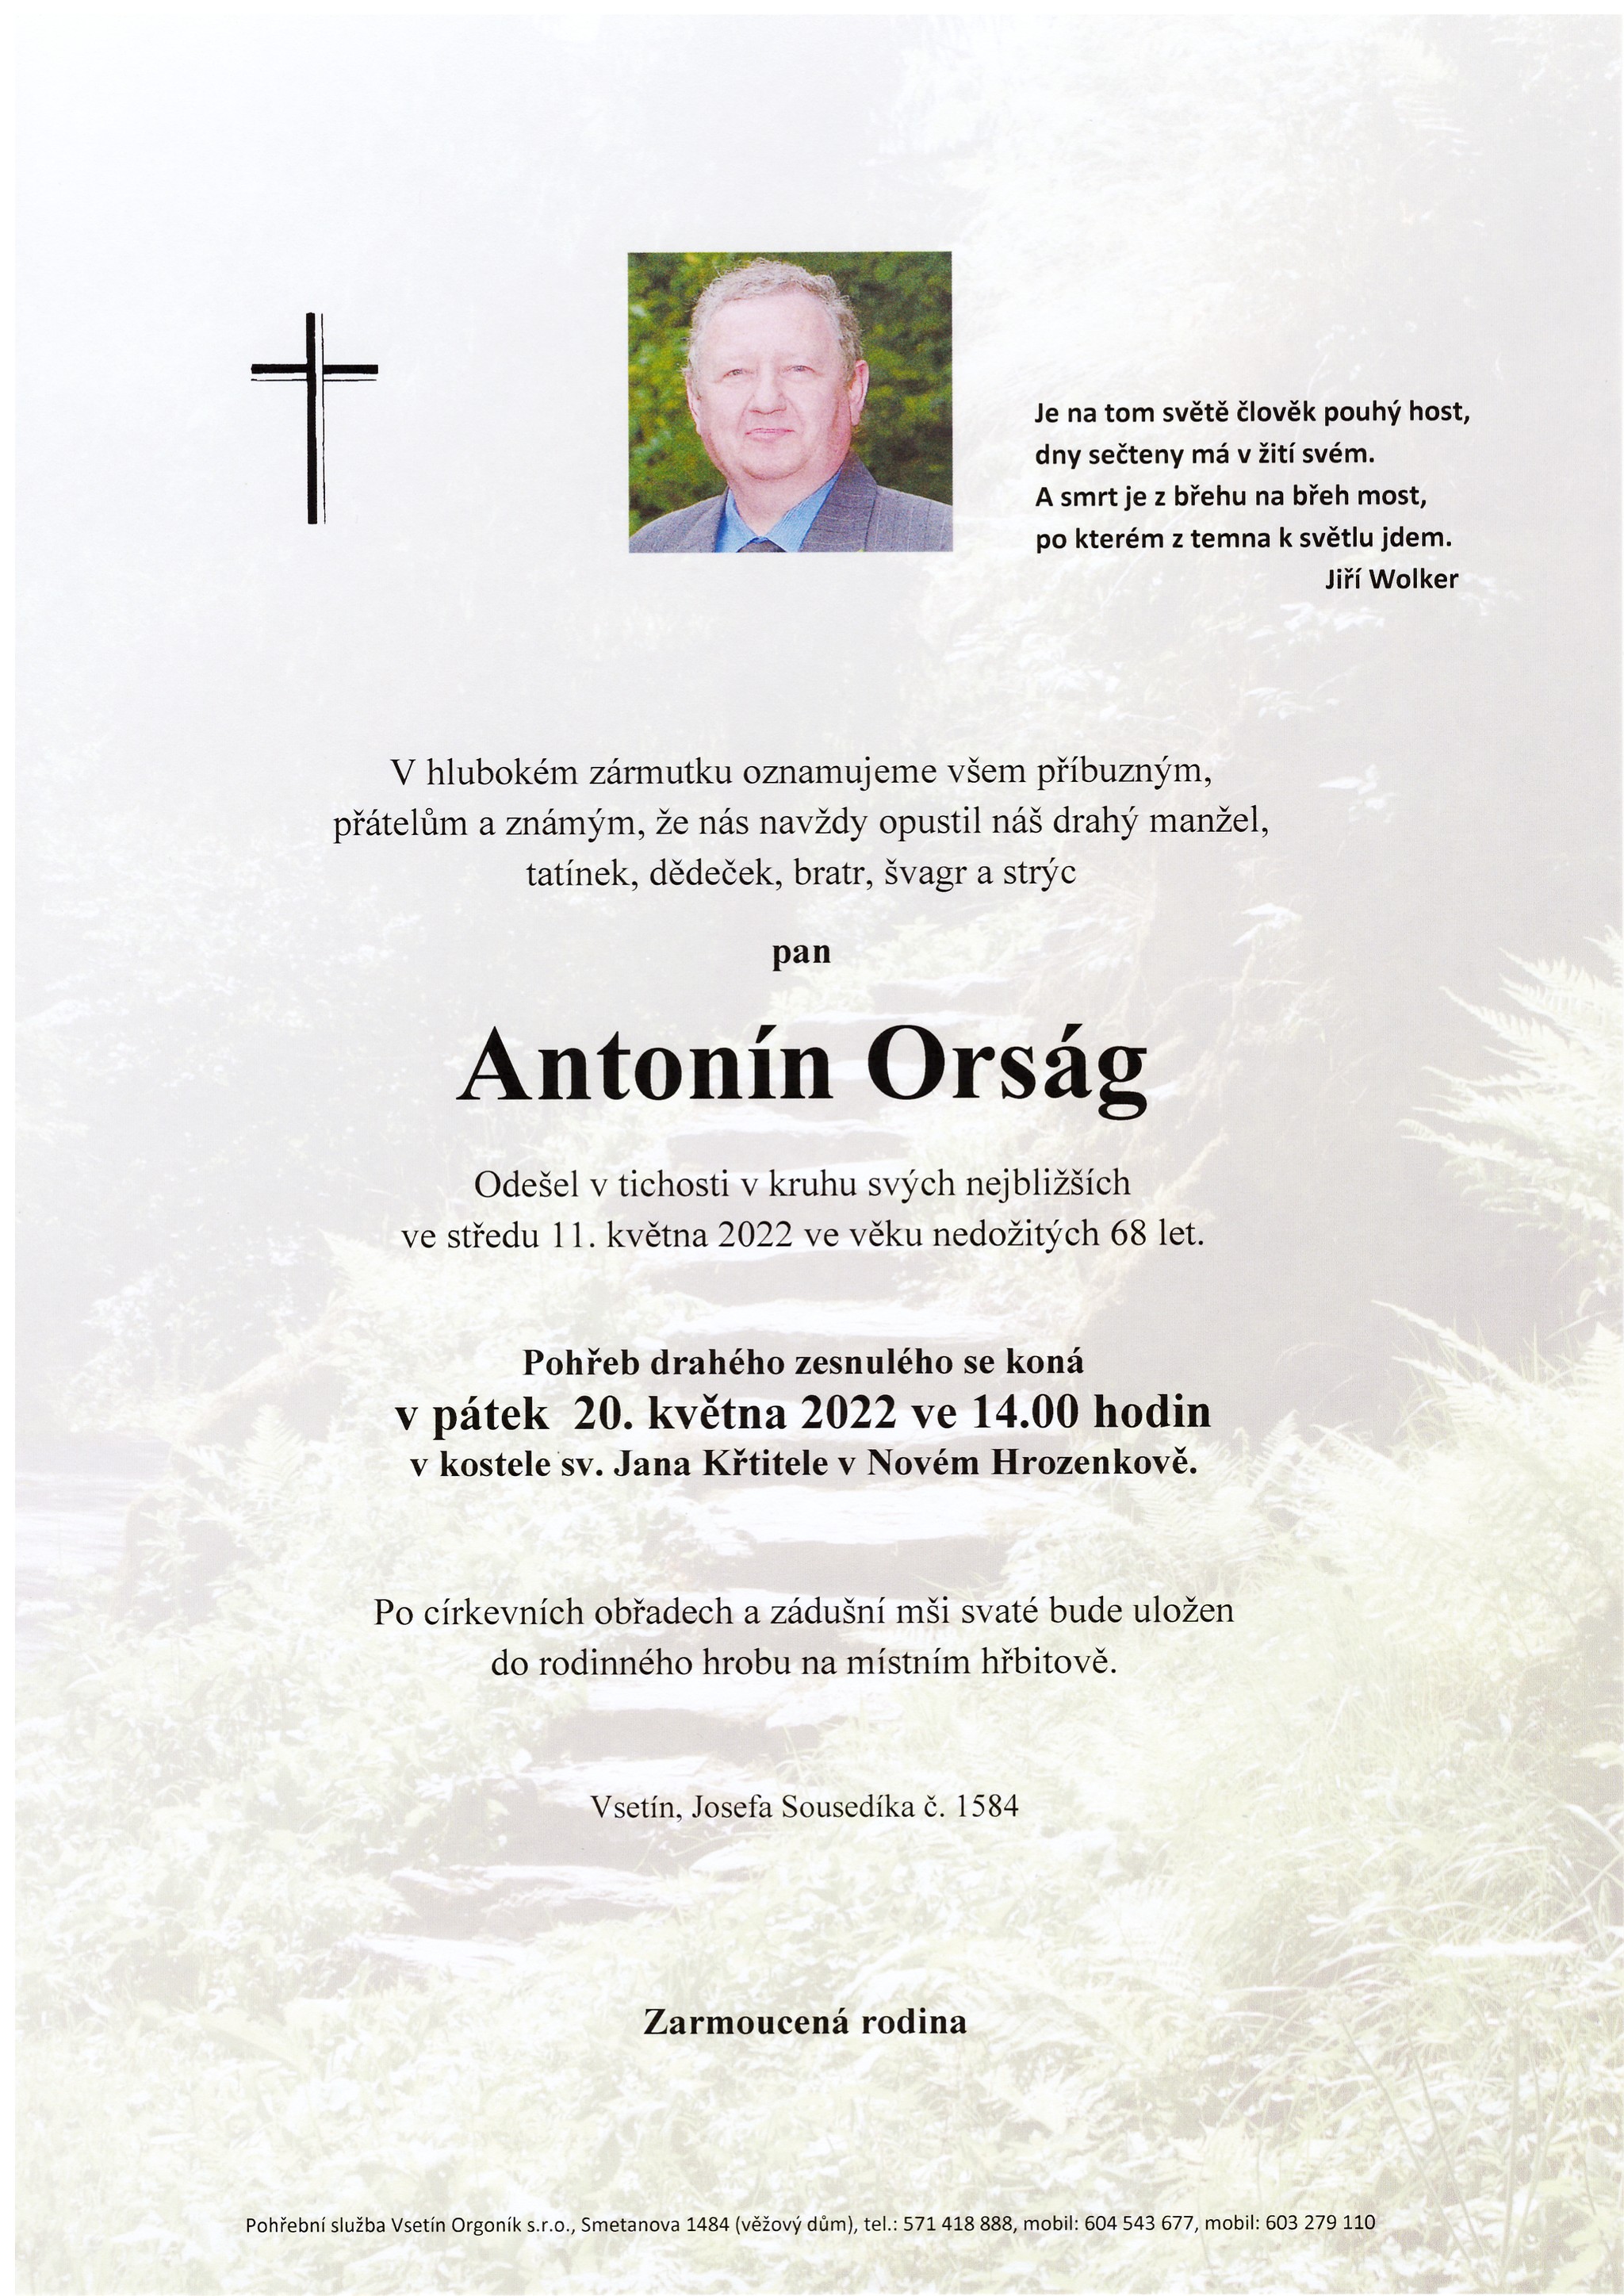 Antonín Orság